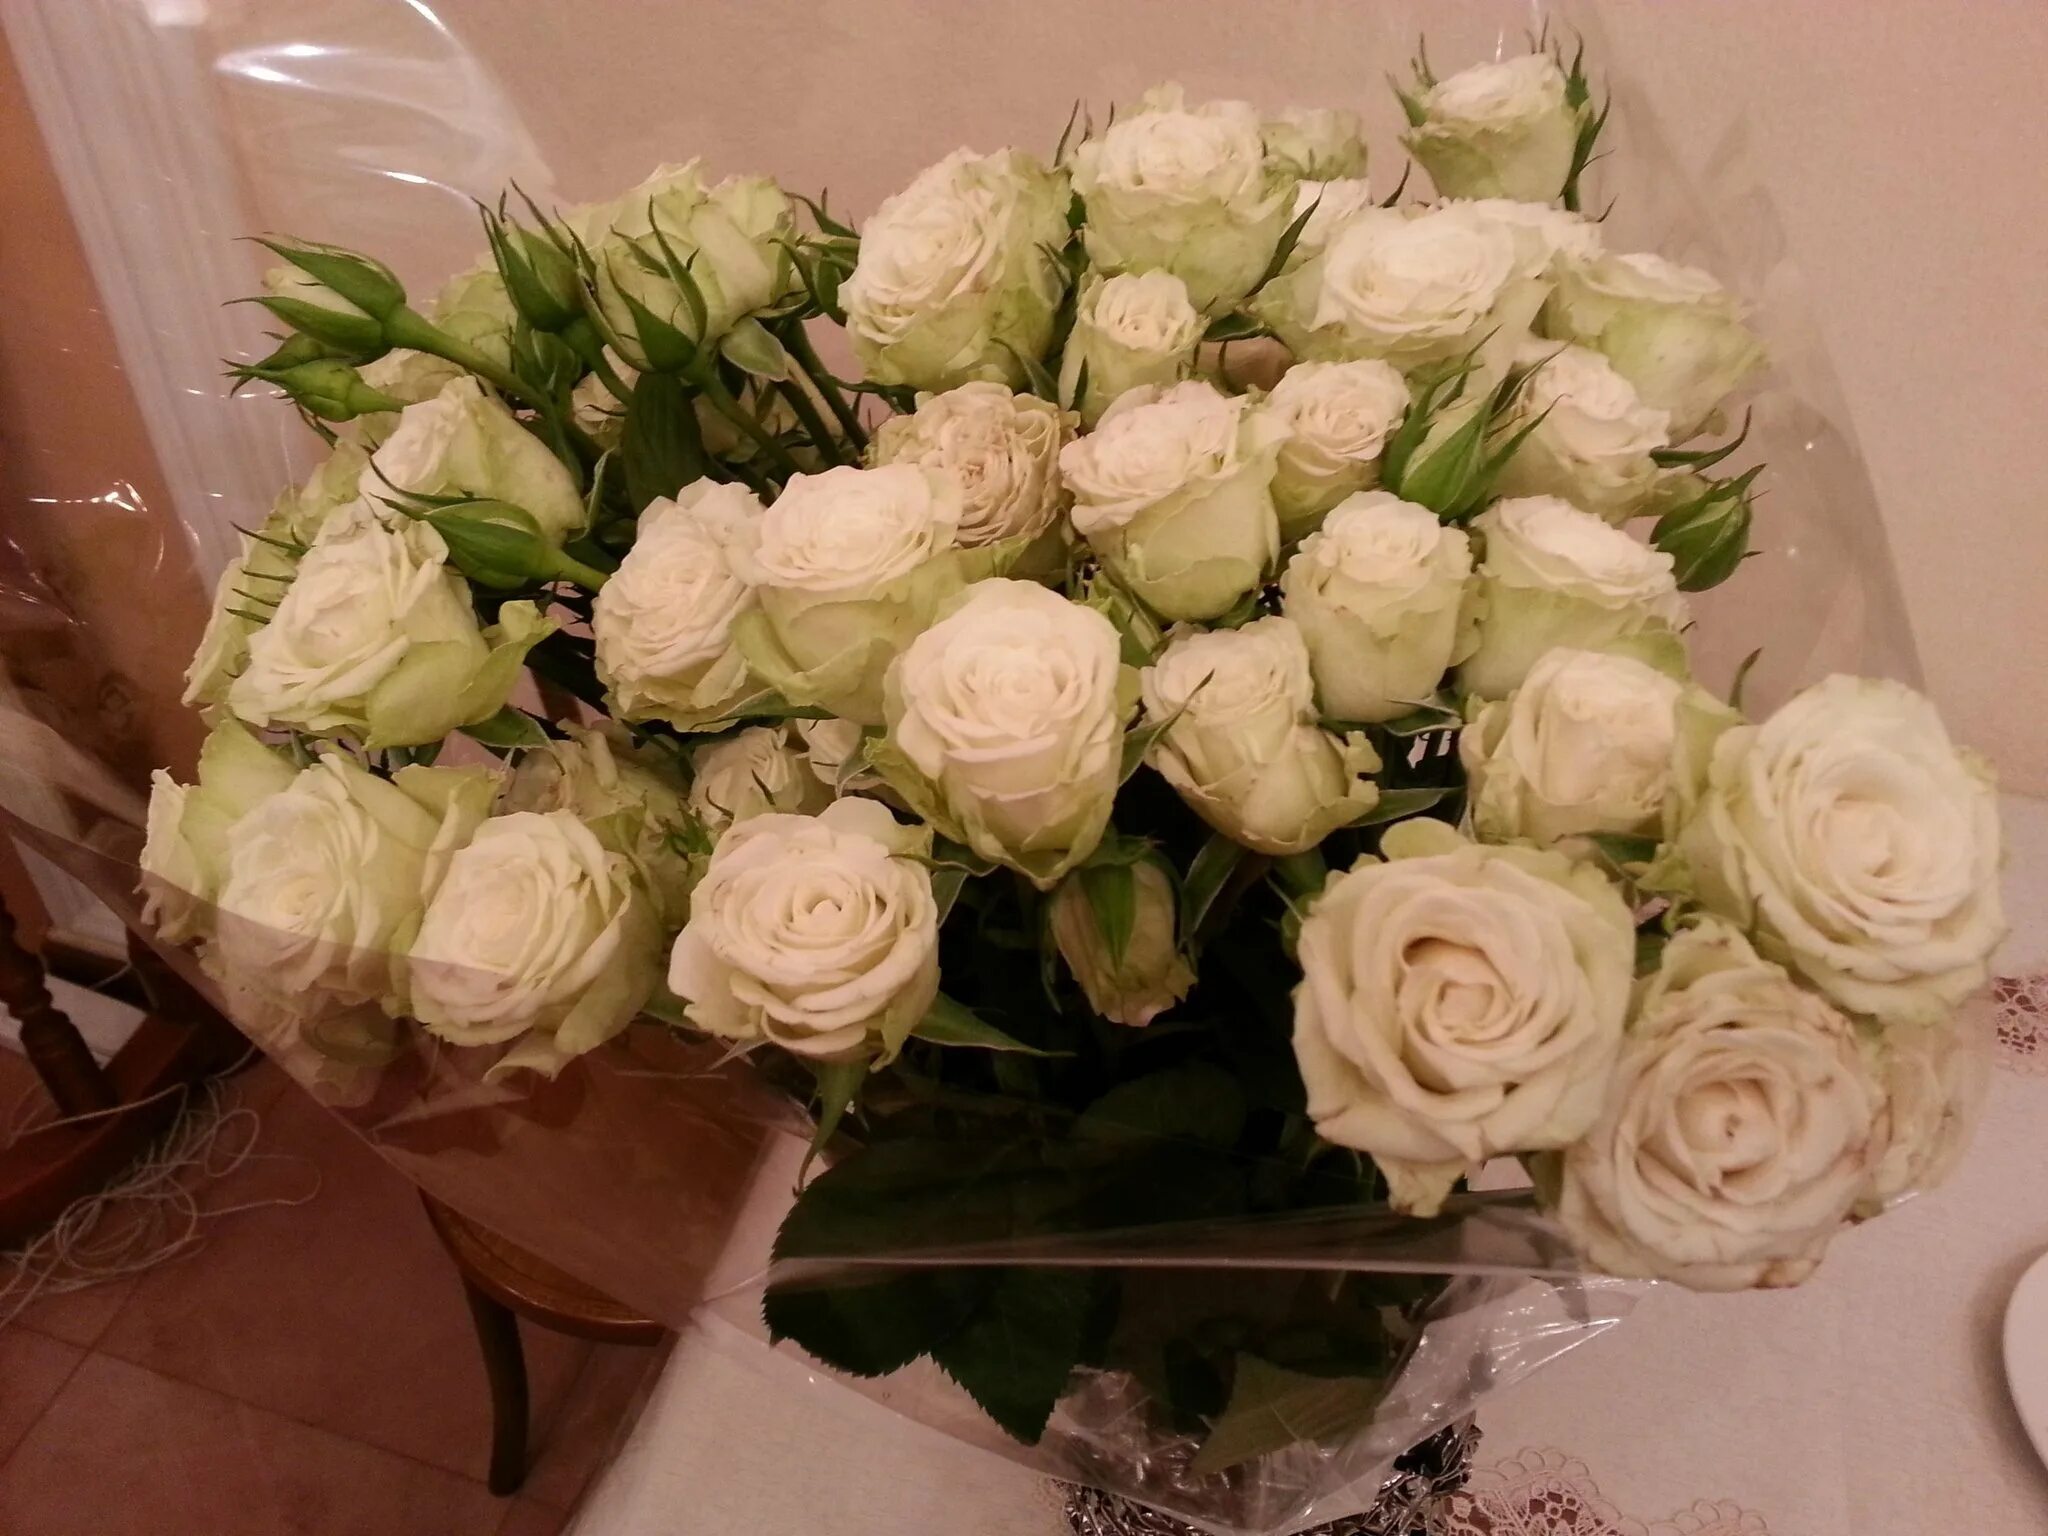 Фото реальных букетов цветов дома. Букет роз. Красивый букет дома. Букет цветов на столе. Букет белых роз.